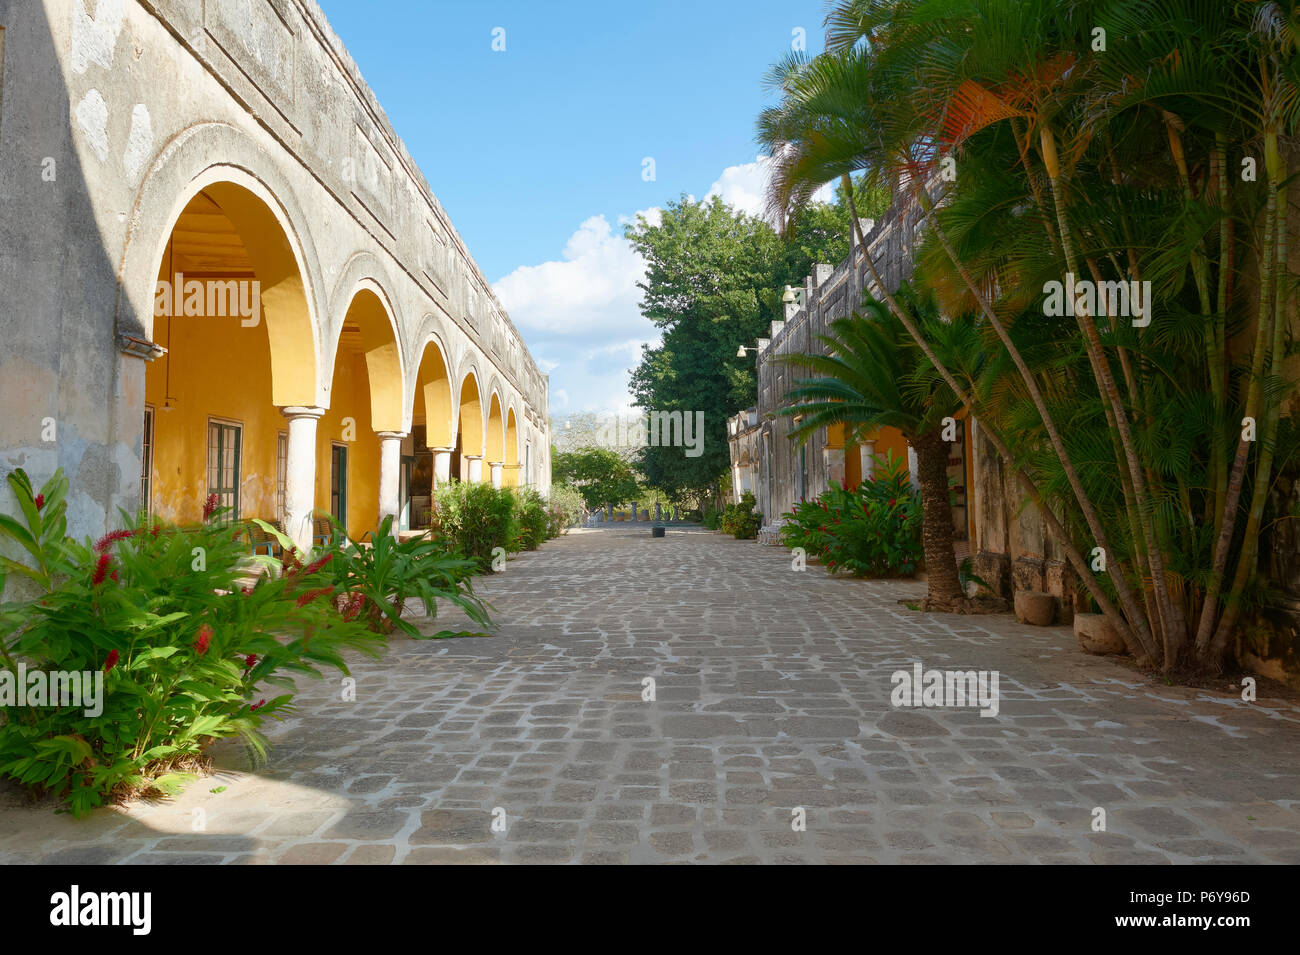 Hacienda Yaxcopoil ist ein aus dem 17. Jahrhundert henequen Plantage in der Nähe von Merida, Yucatan, Mexiko, heute ein Museum, Gästehaus und Veranstaltungsort. Stockfoto